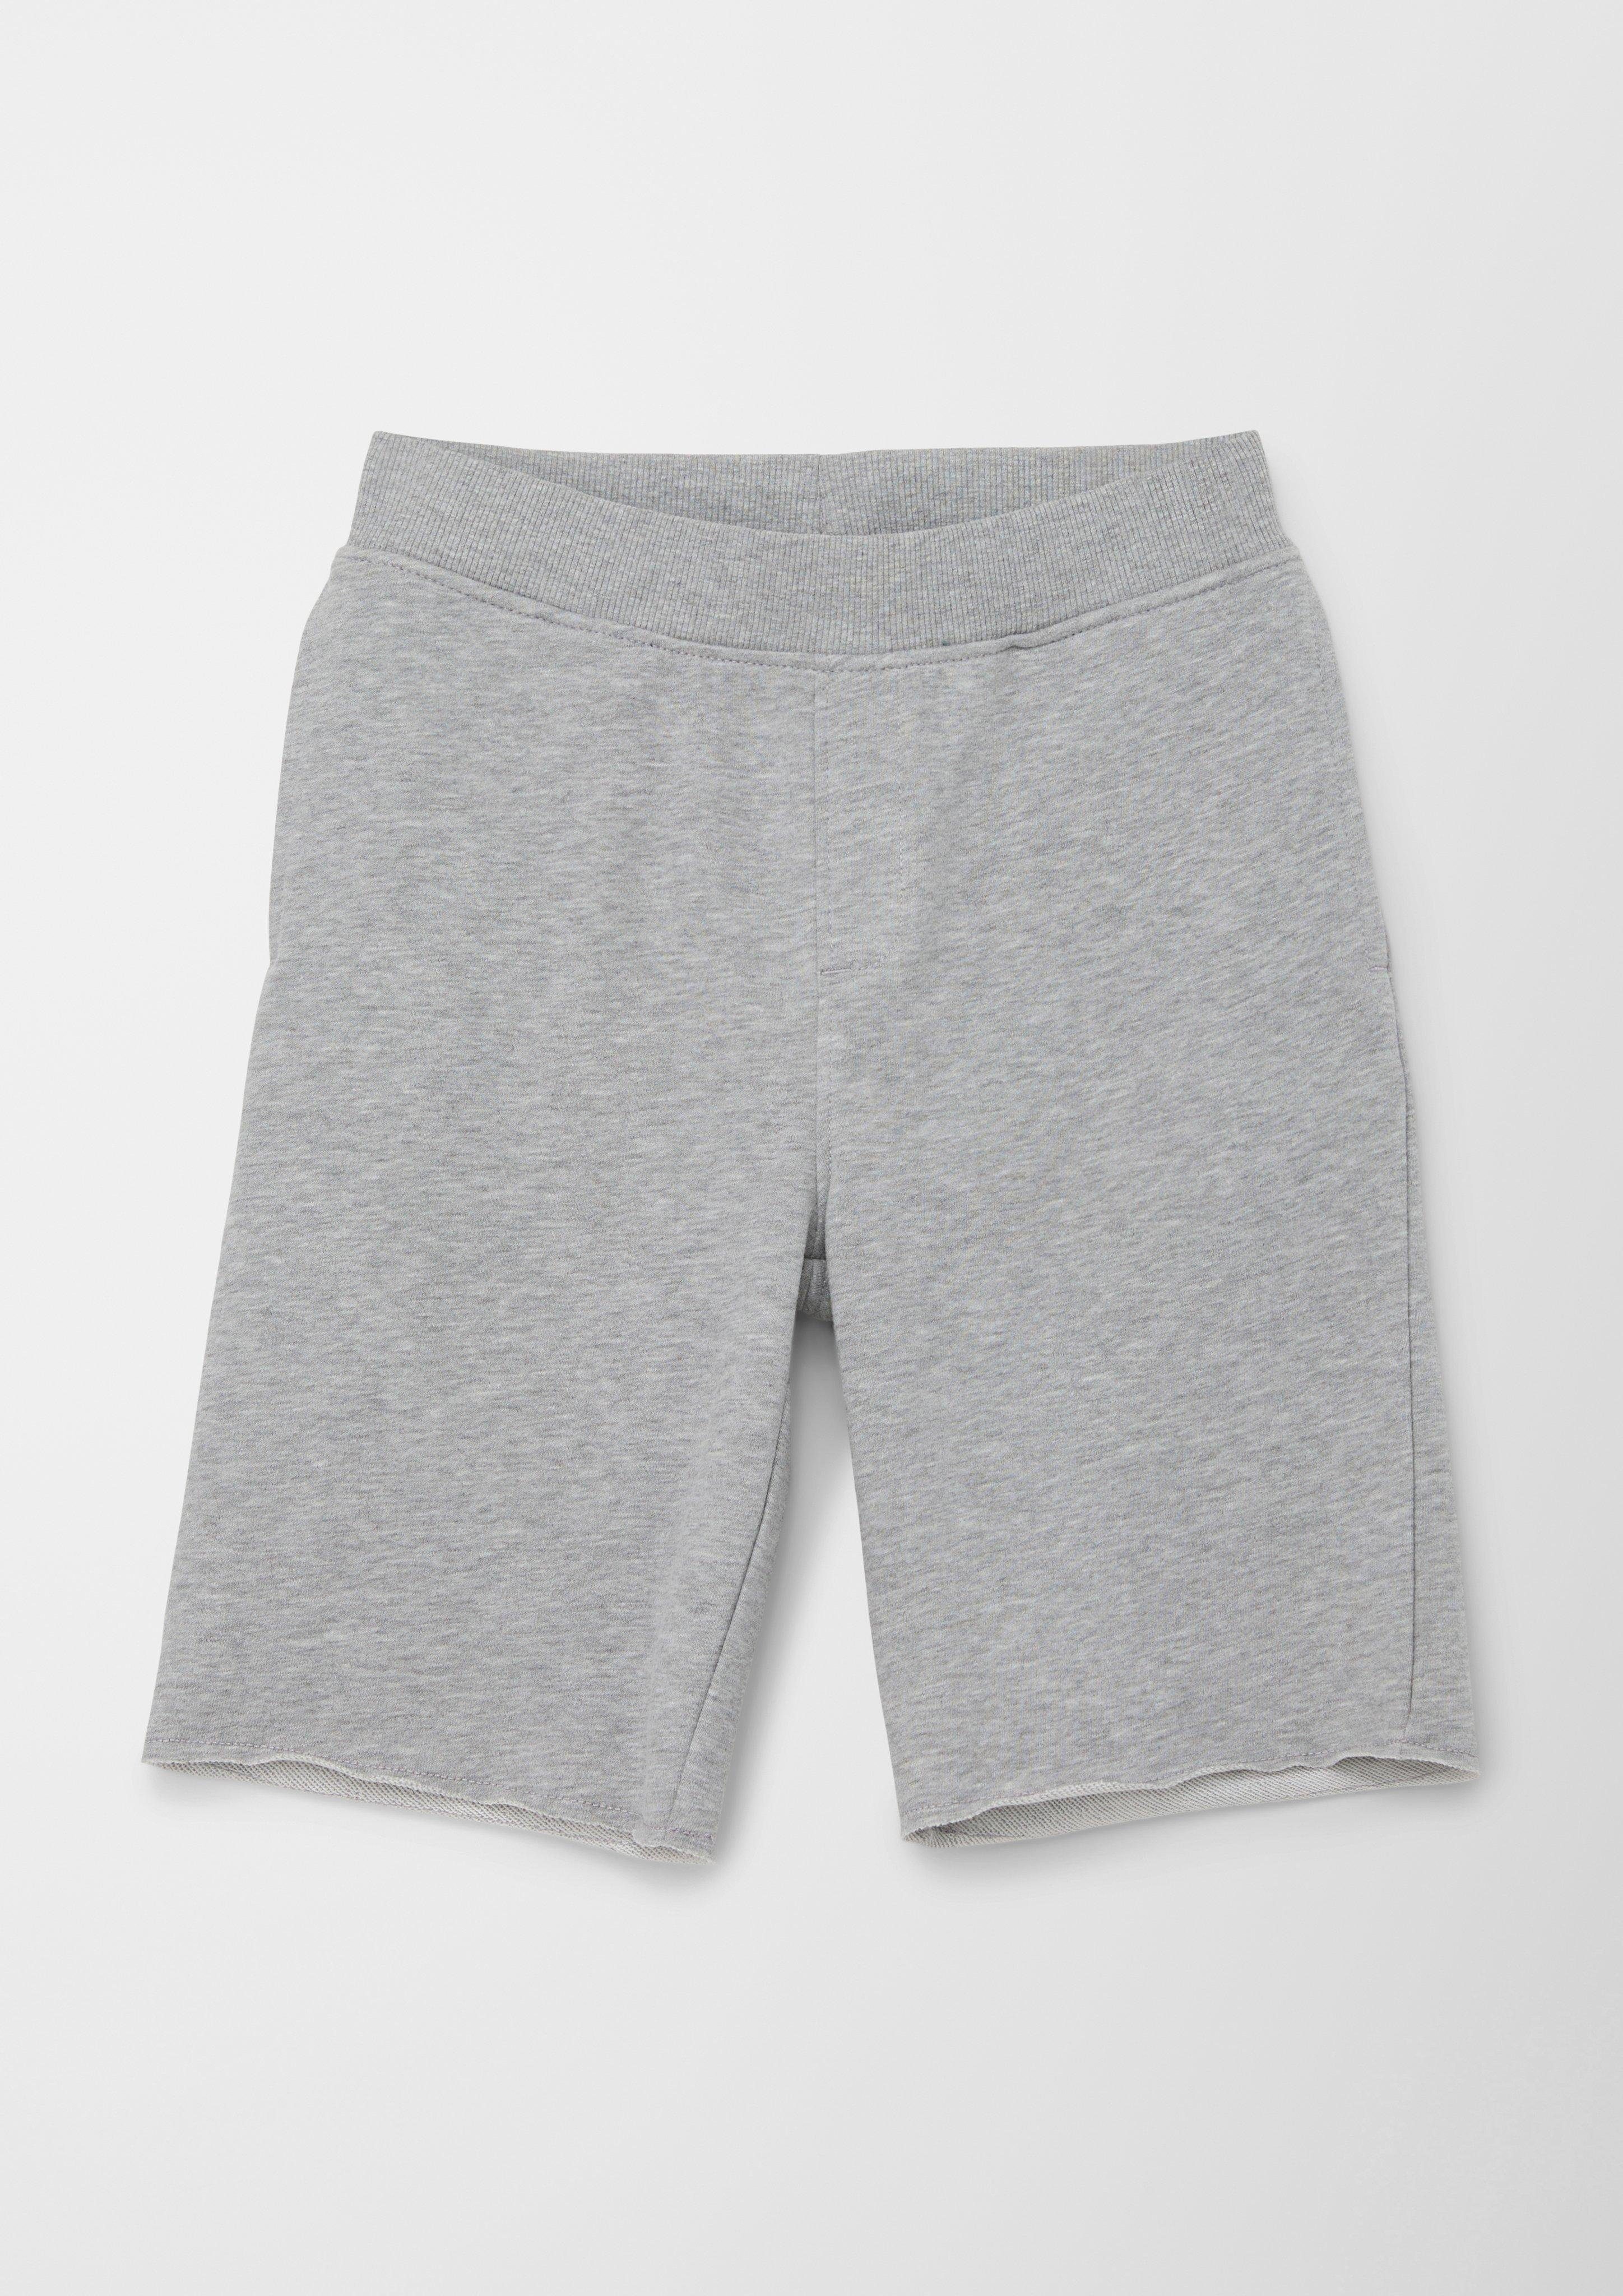 s.Oliver Leggings Regular: Sweat-Shorts mit Elastikbund Rippblende, angedeuteter Tunnelzug grau meliert